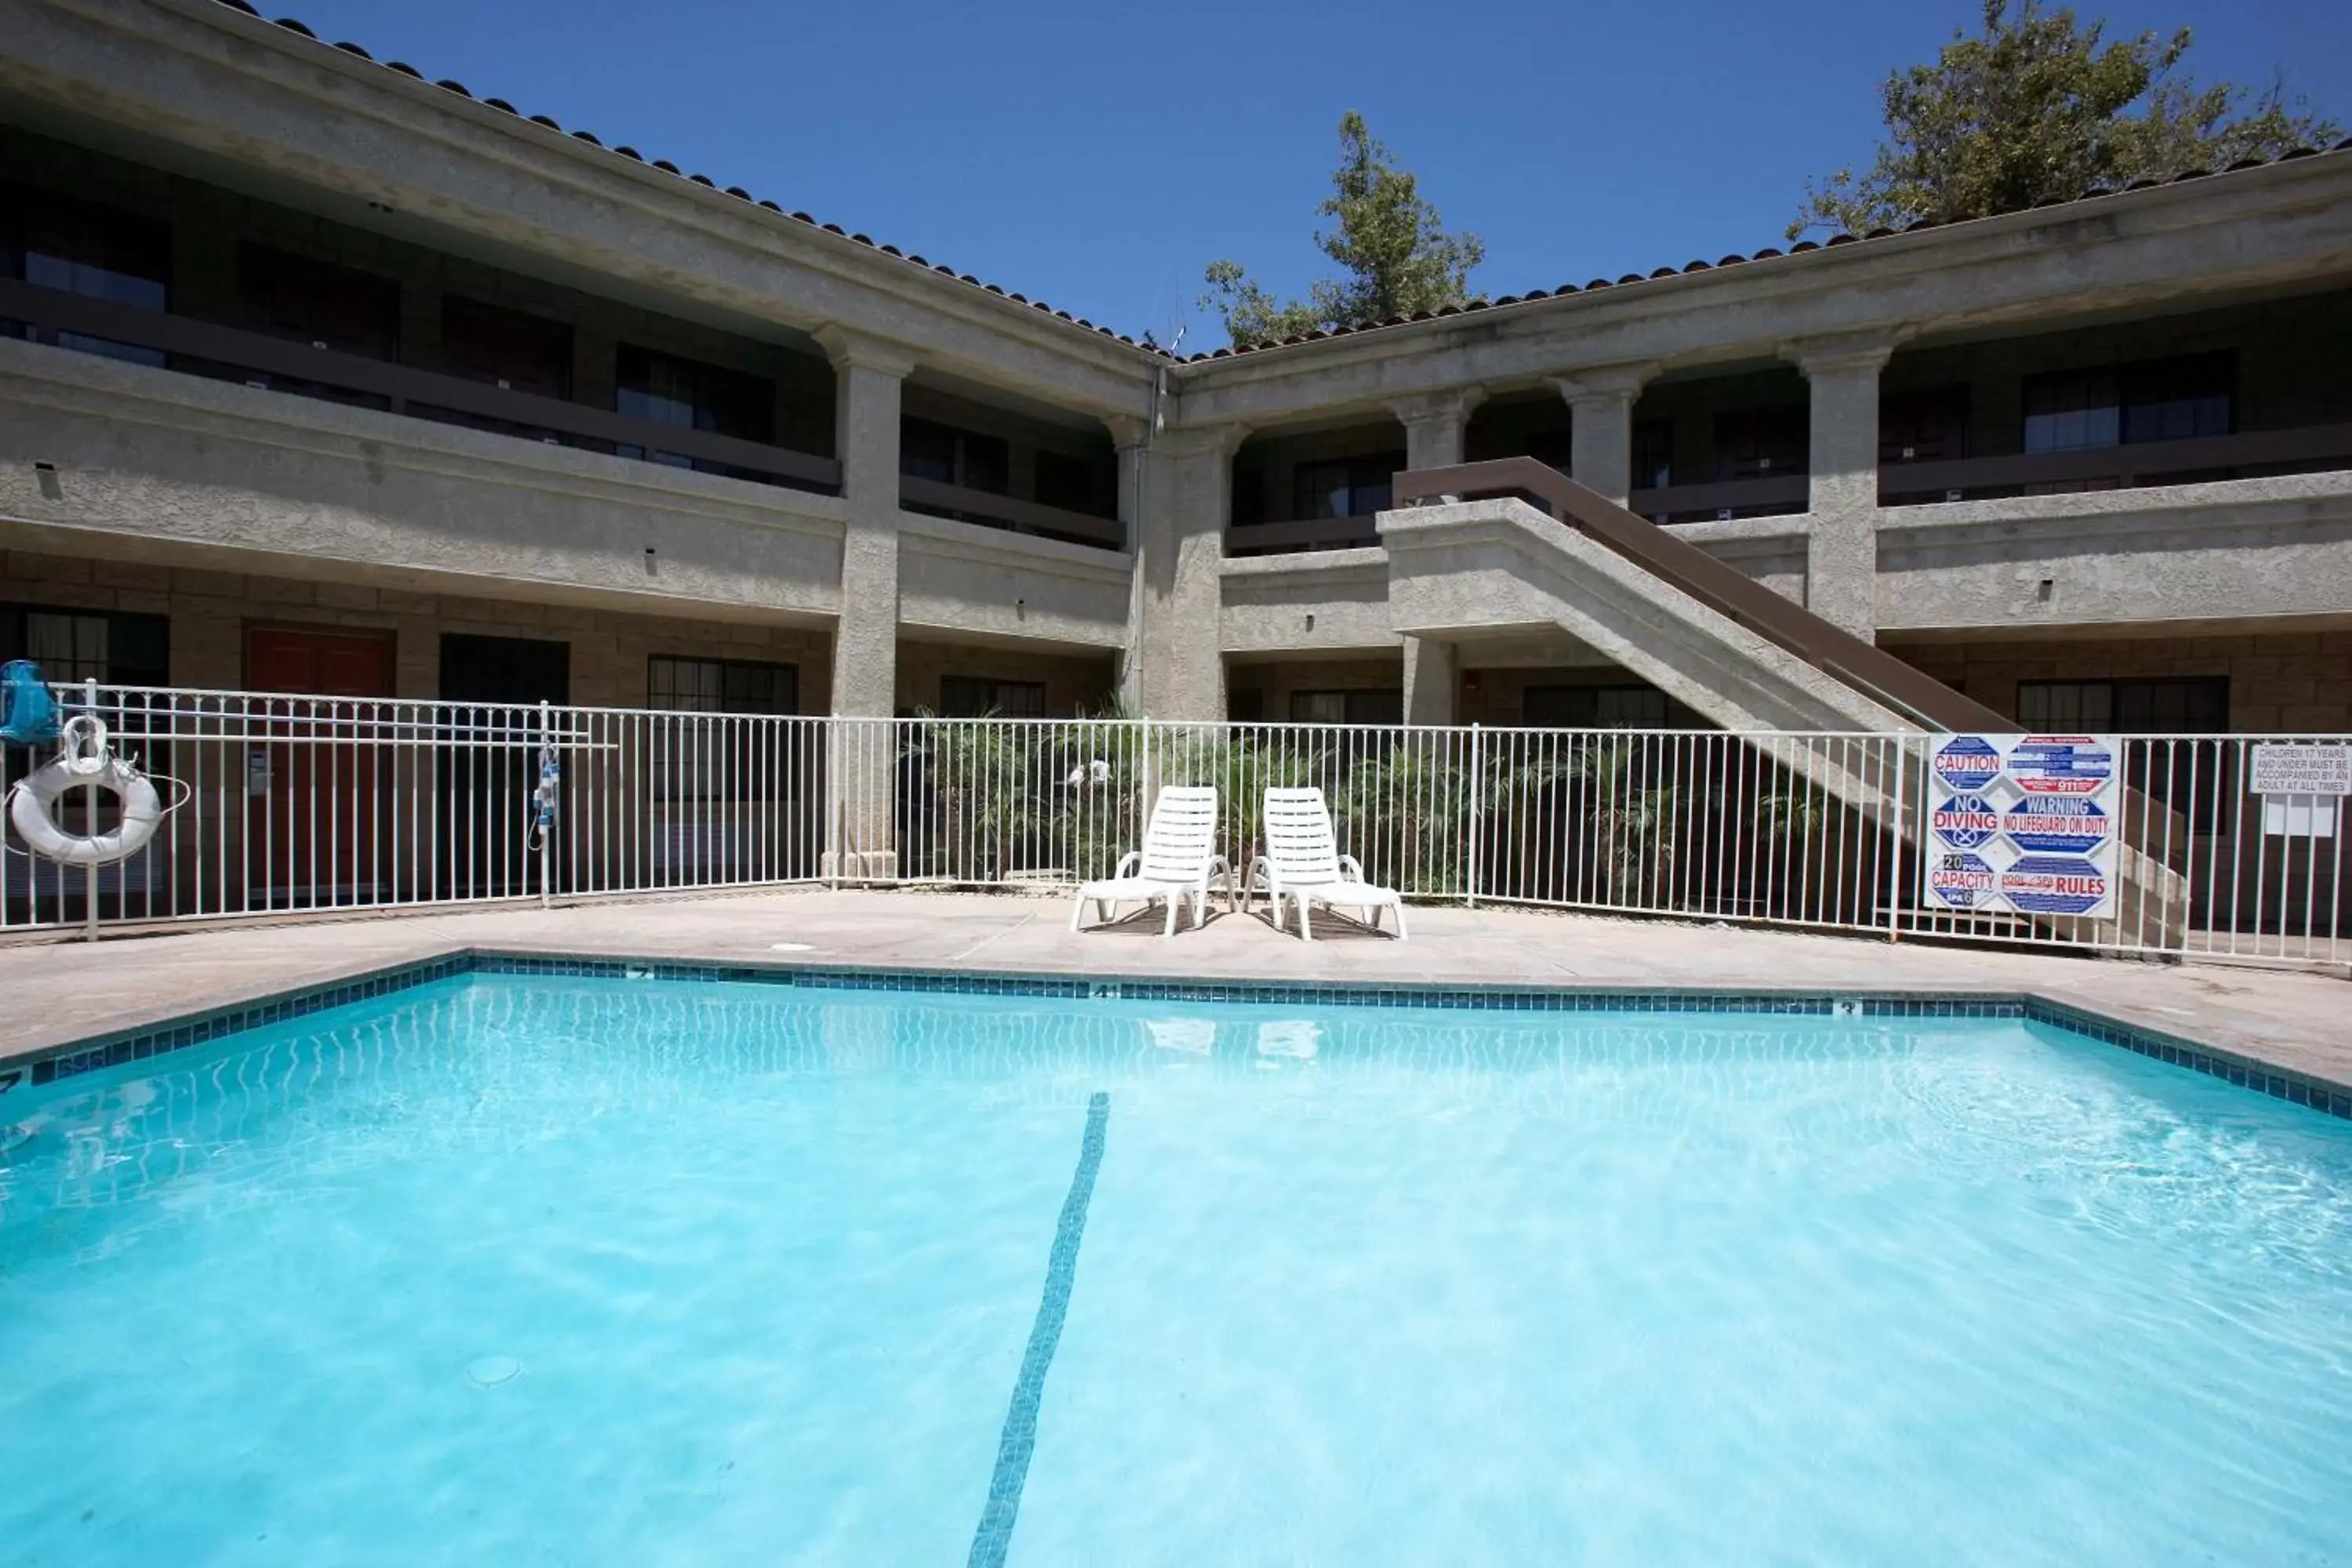 Swimming Pool in Premier Inns Thousand Oaks